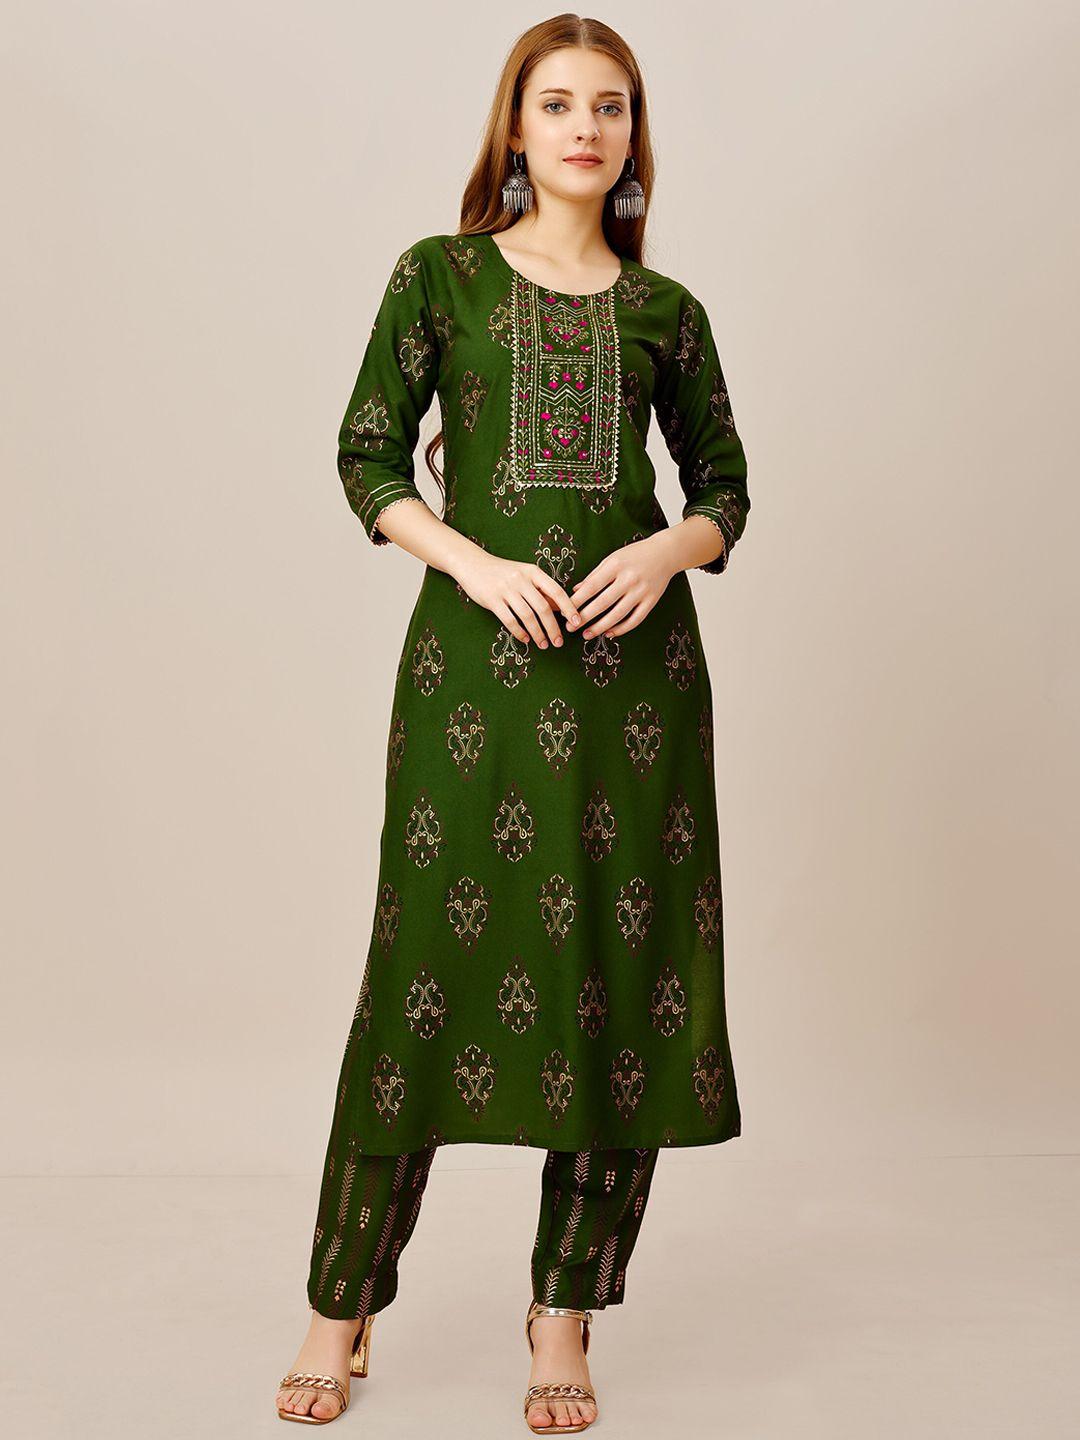 baps women green floral printed regular kurti with pyjamas